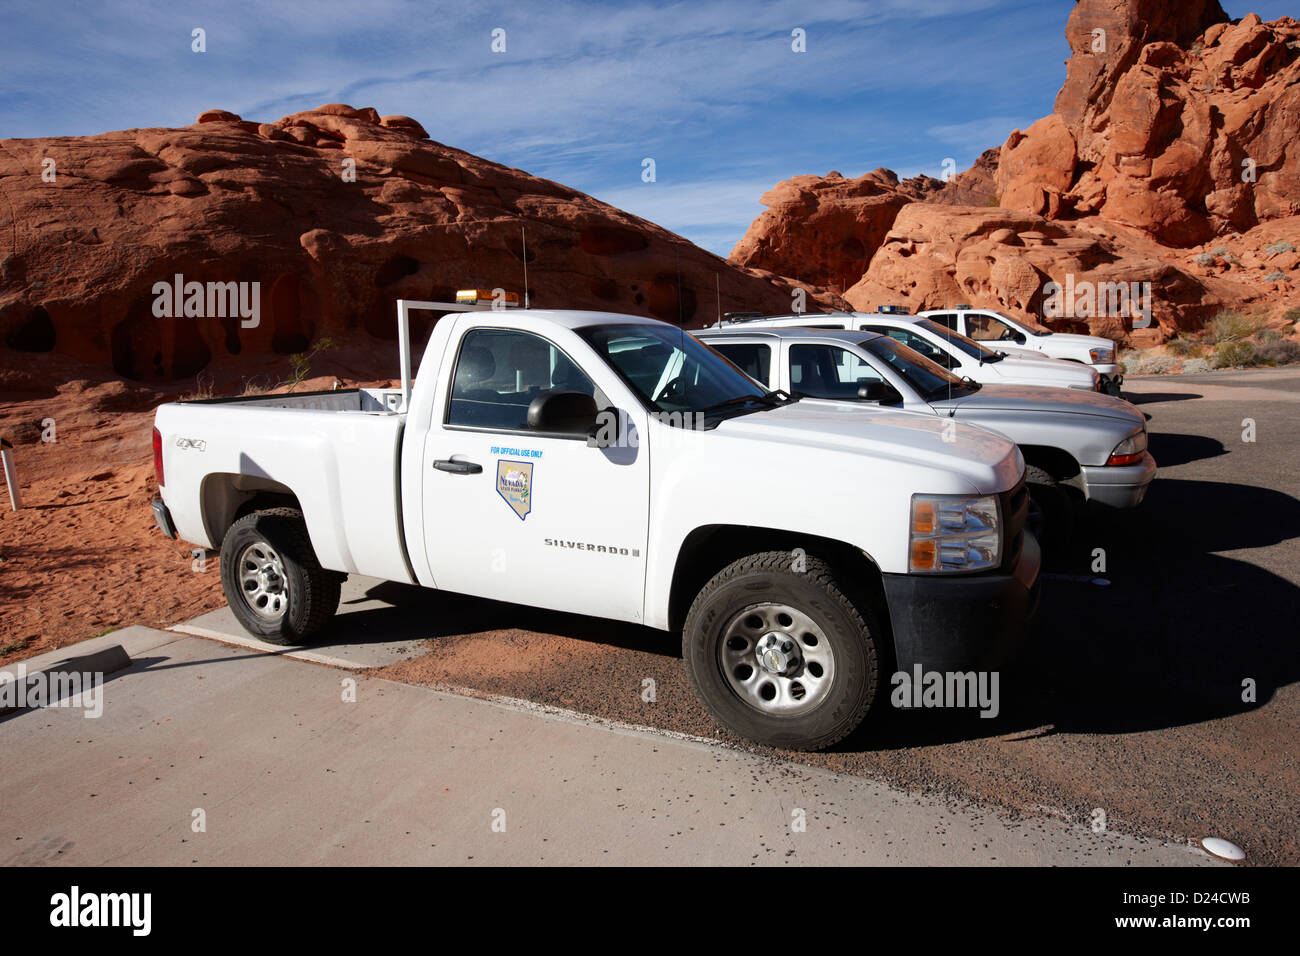 State Park Ranger Fahrzeugen in das Tal der Feuerwehr Staatspark Nevada, usa Stockfoto